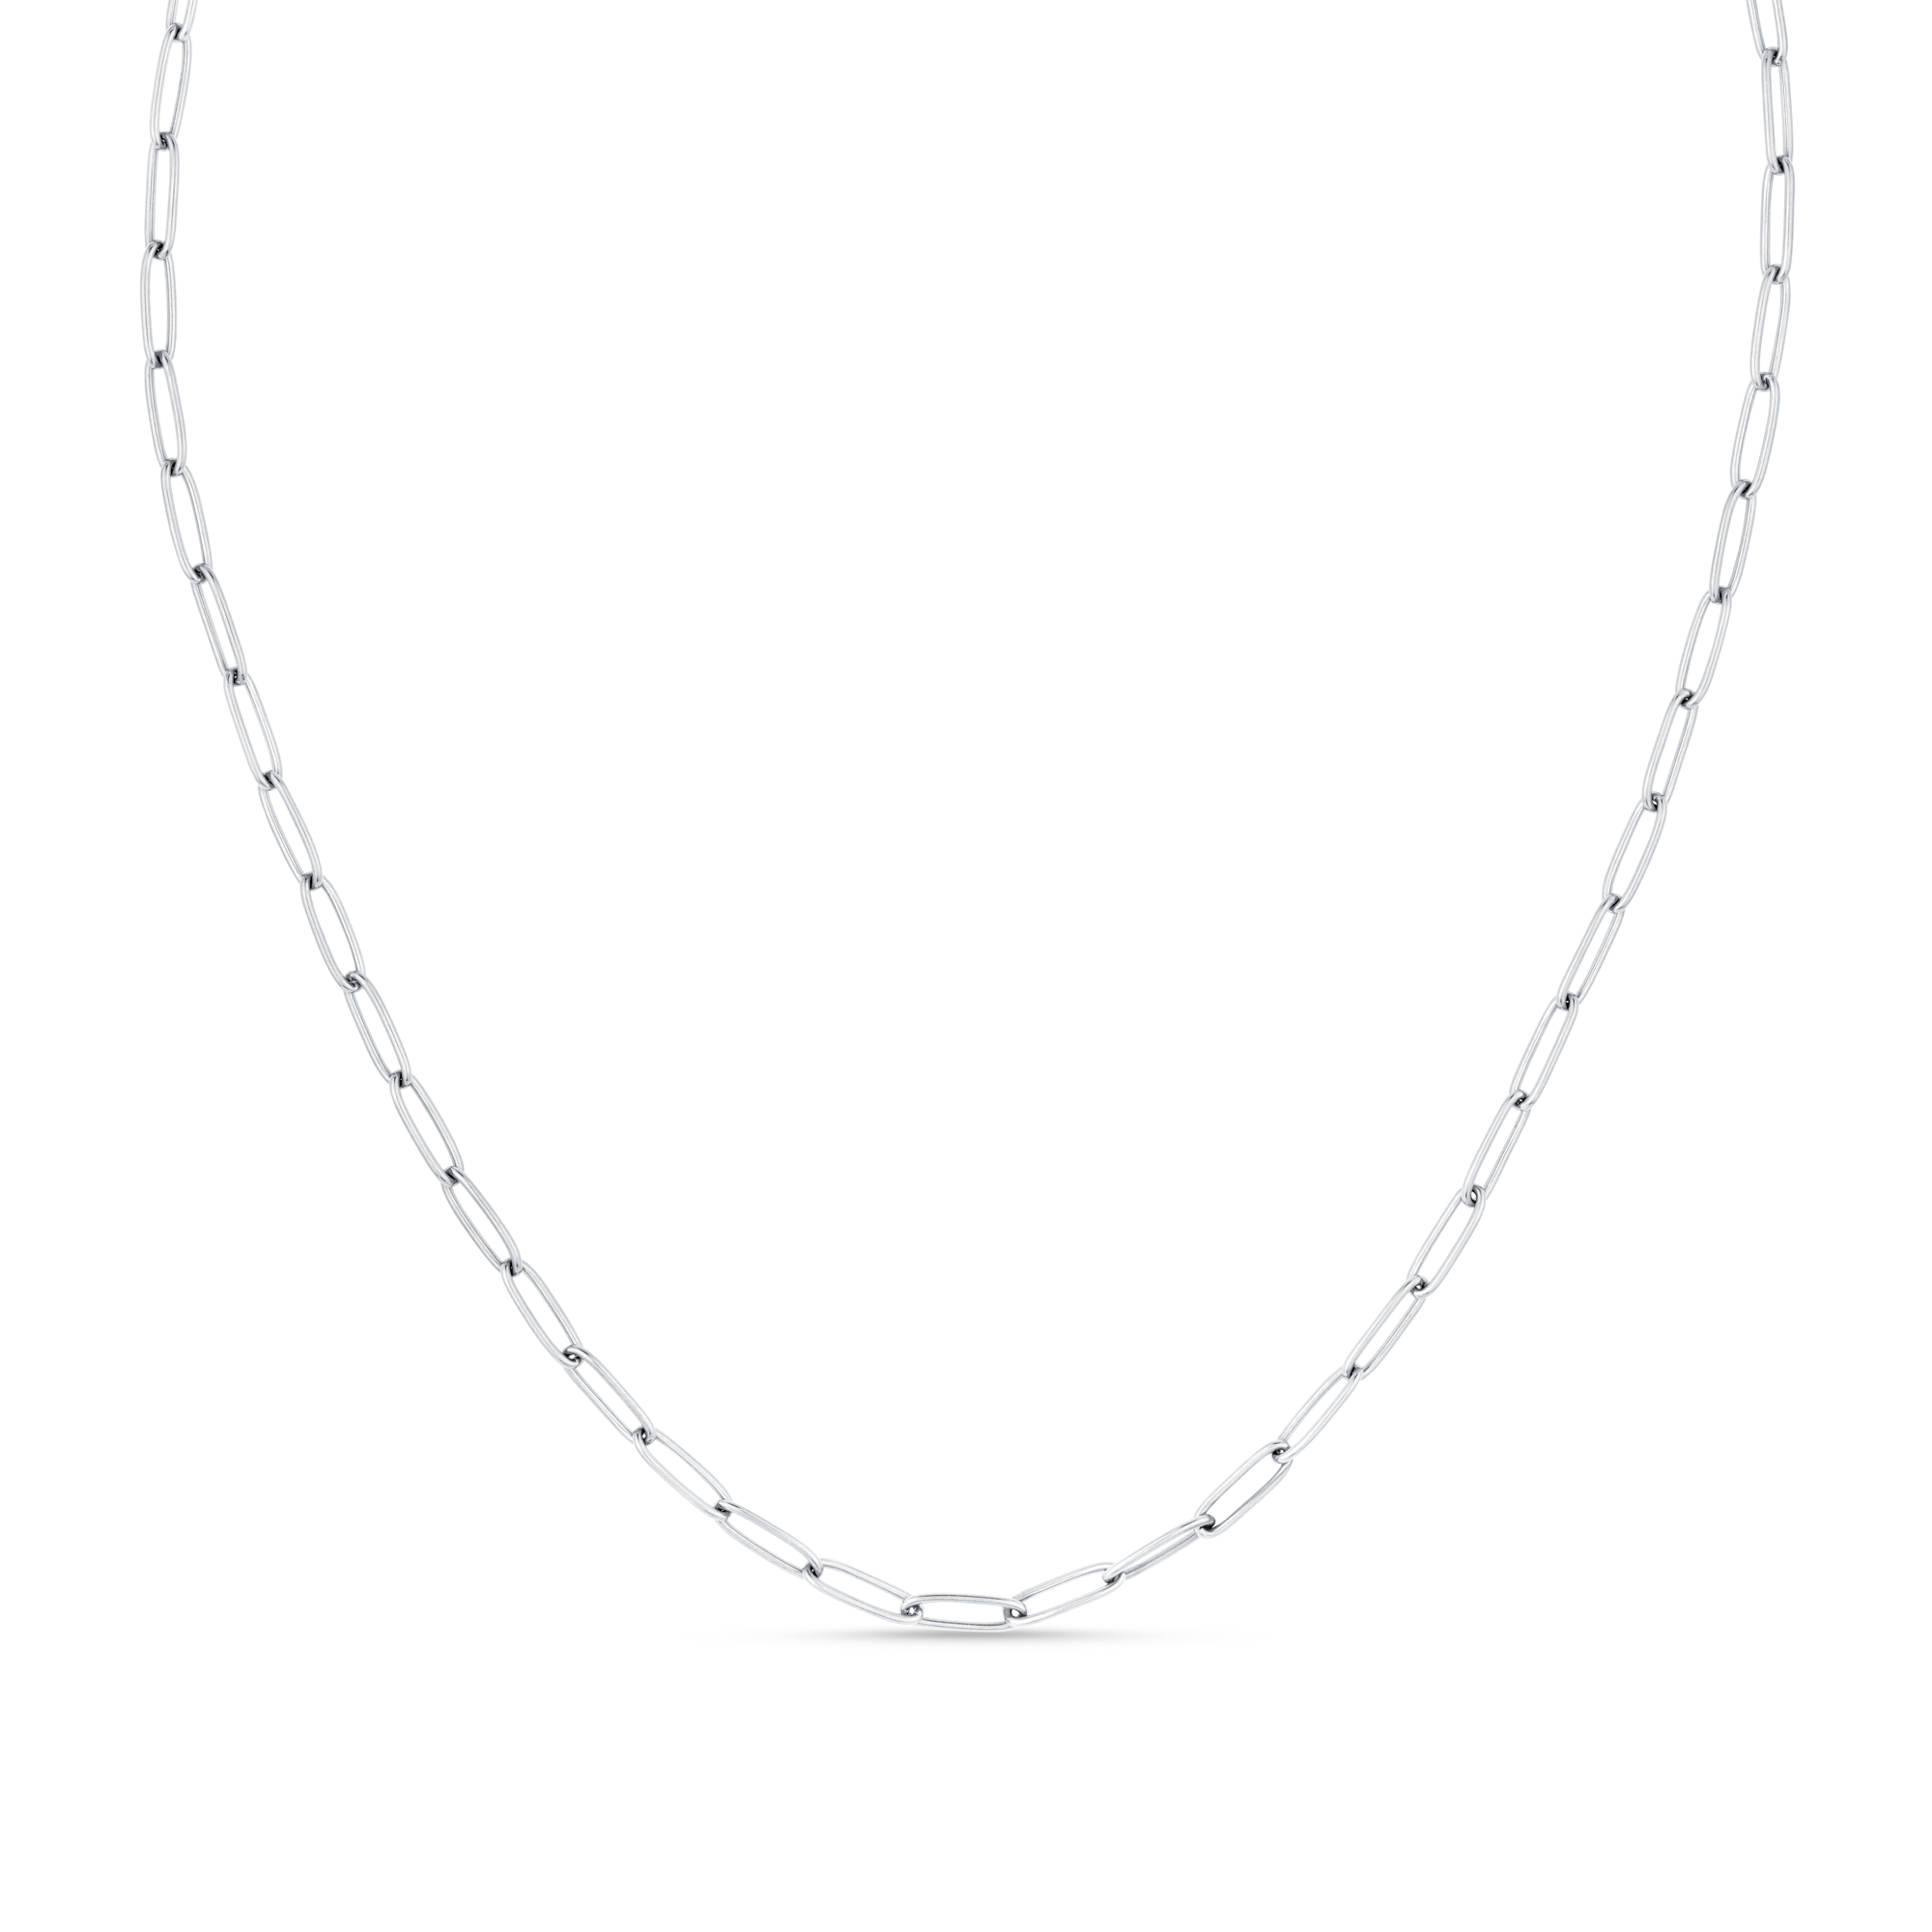 Oval Paperclip Necklace - Silver - Orelia & Joe